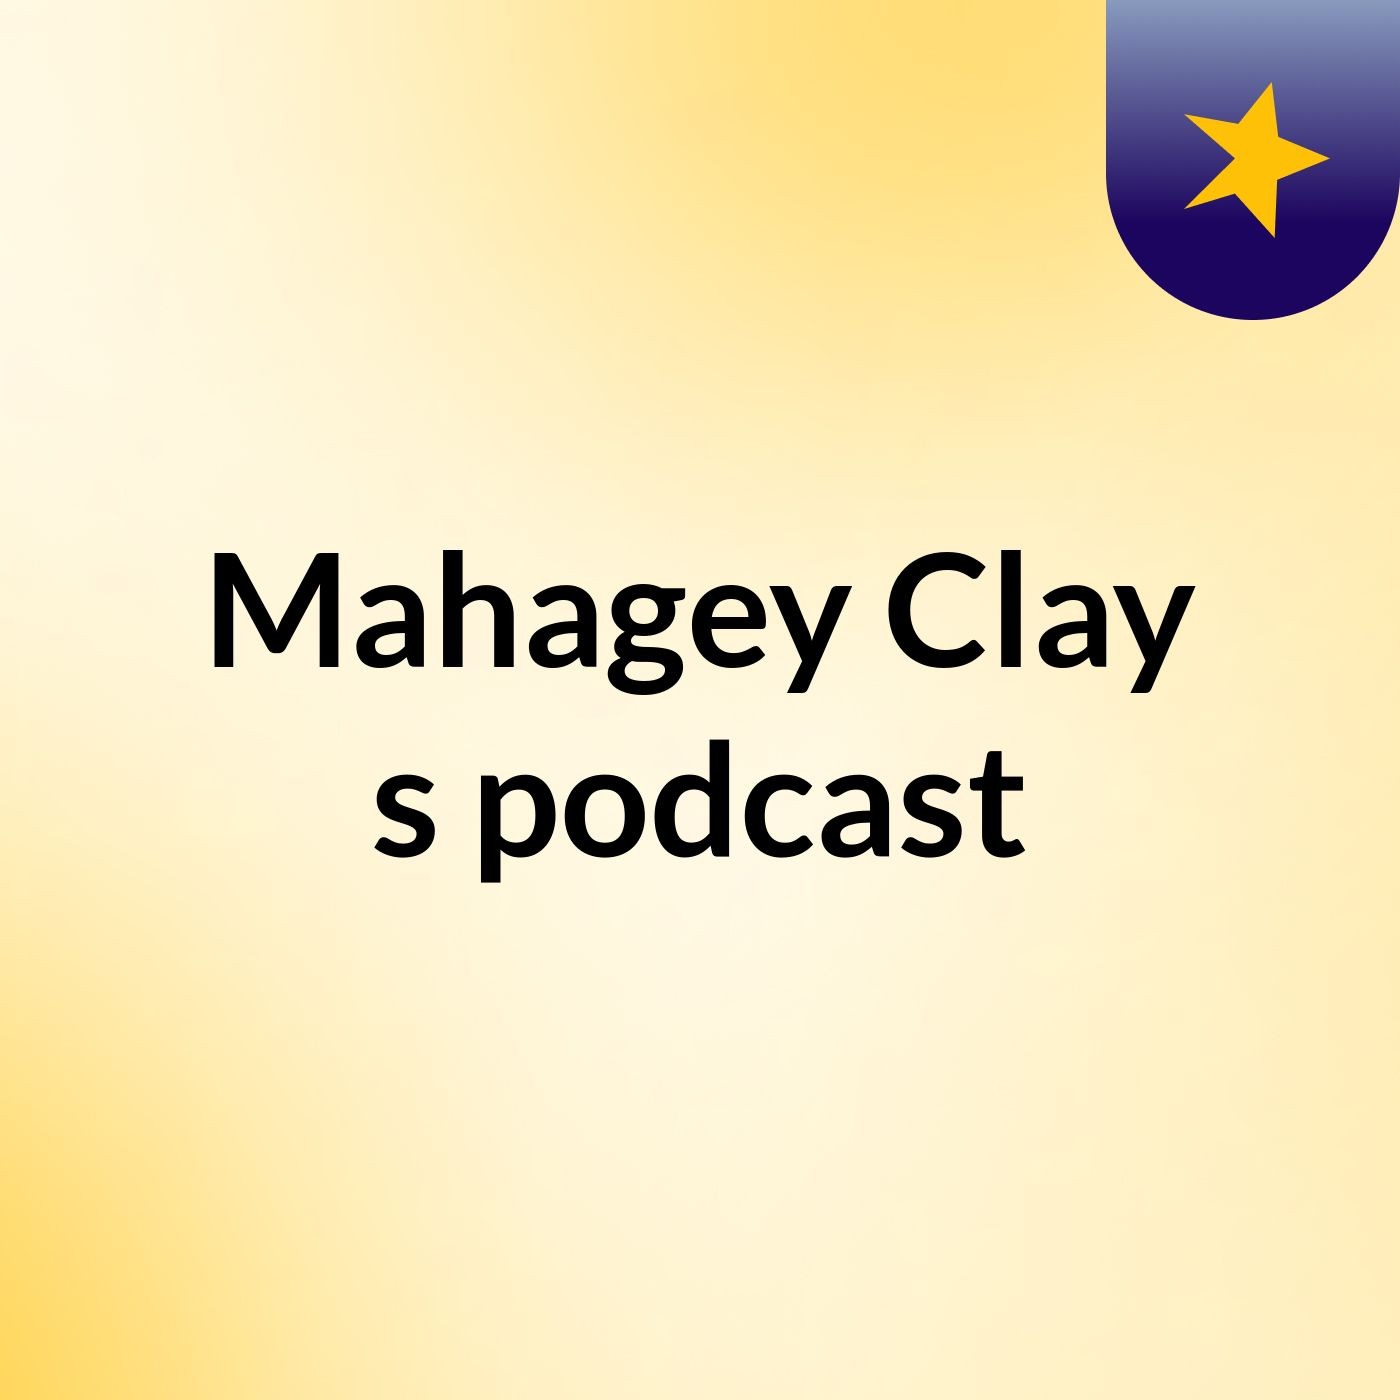 Mahagey Clay's podcast